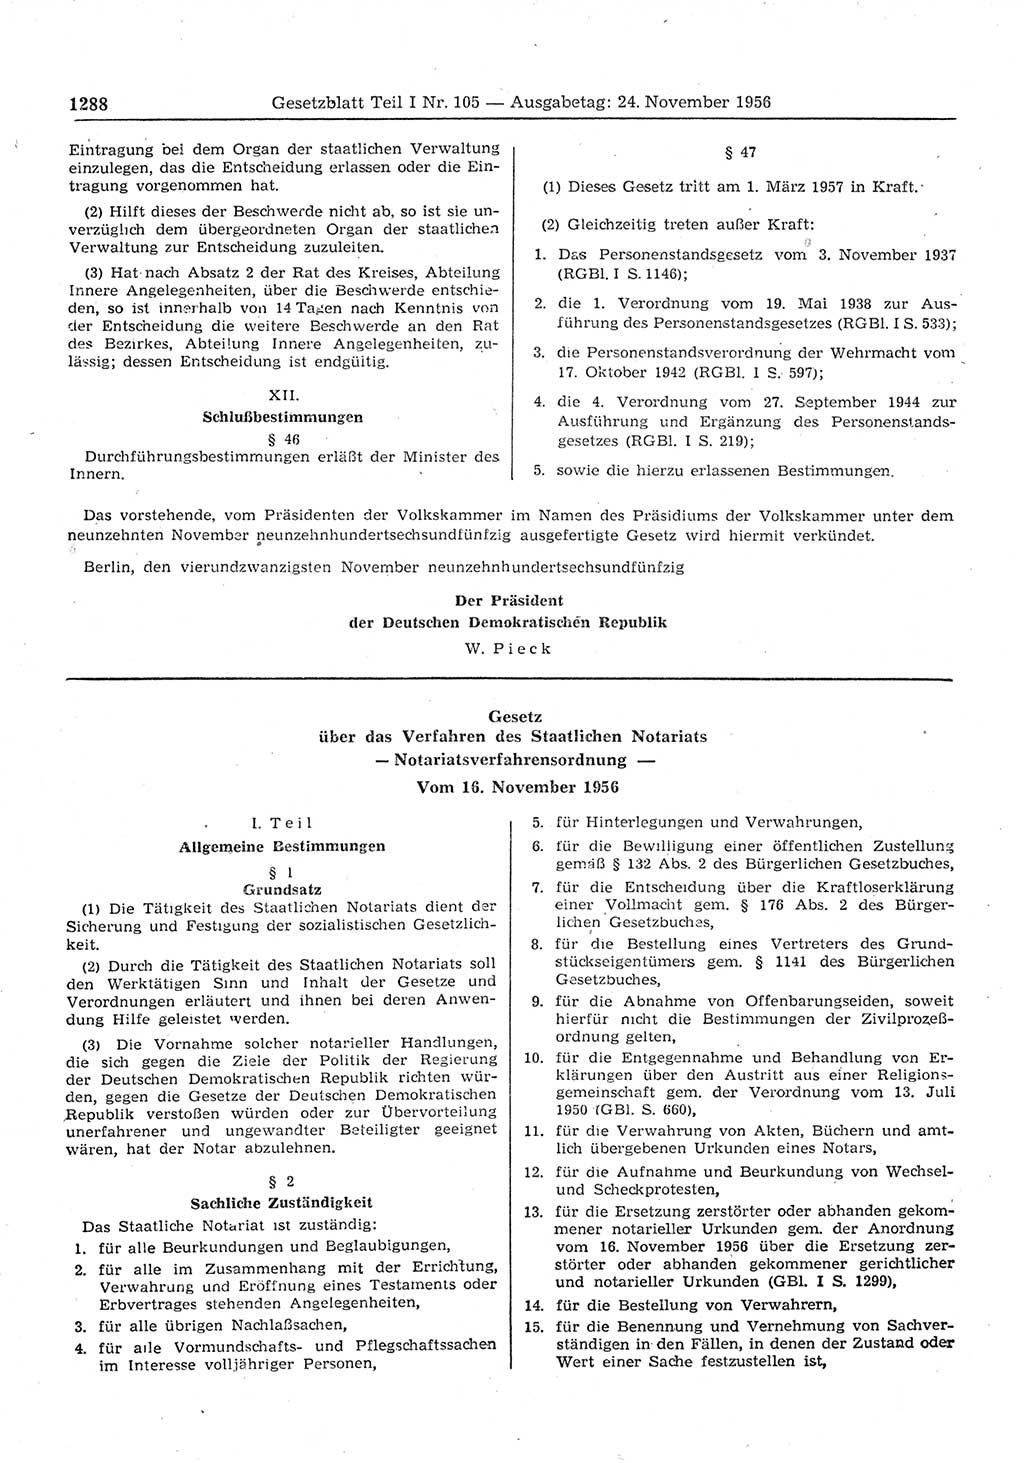 Gesetzblatt (GBl.) der Deutschen Demokratischen Republik (DDR) Teil Ⅰ 1956, Seite 1288 (GBl. DDR Ⅰ 1956, S. 1288)